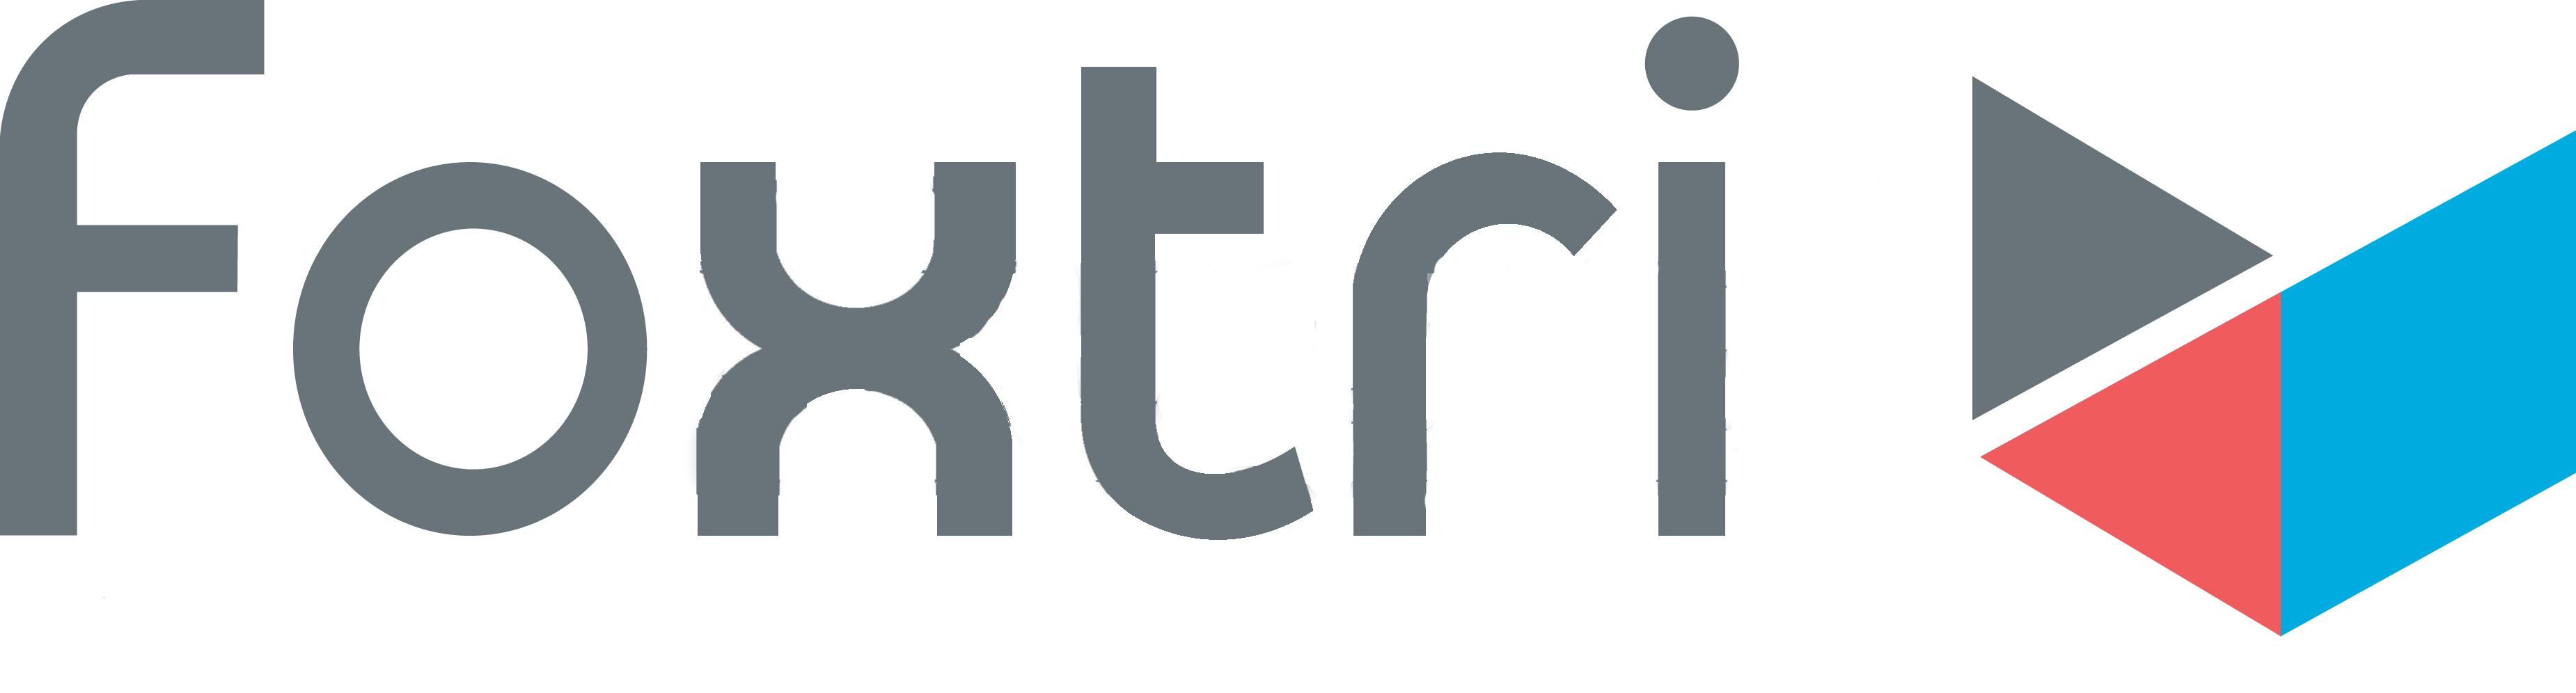 foxtri logo